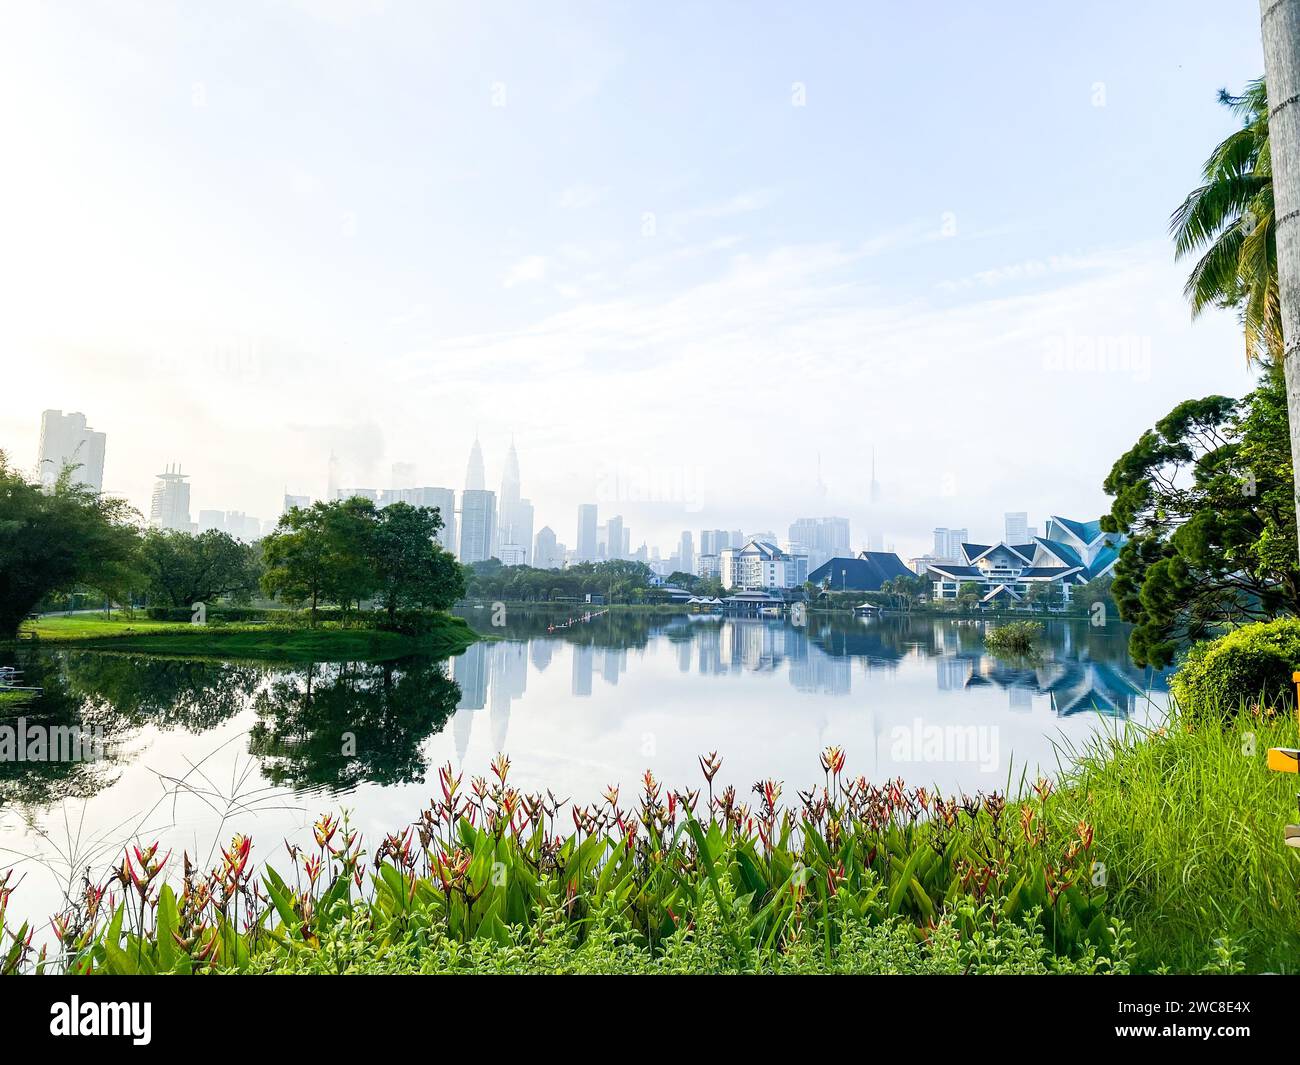 Taman Tasik Titiwangsa est une destination populaire pour les habitants et les touristes, offrant une escapade tranquille au milieu des rues animées de Kuala Lumpur. Banque D'Images